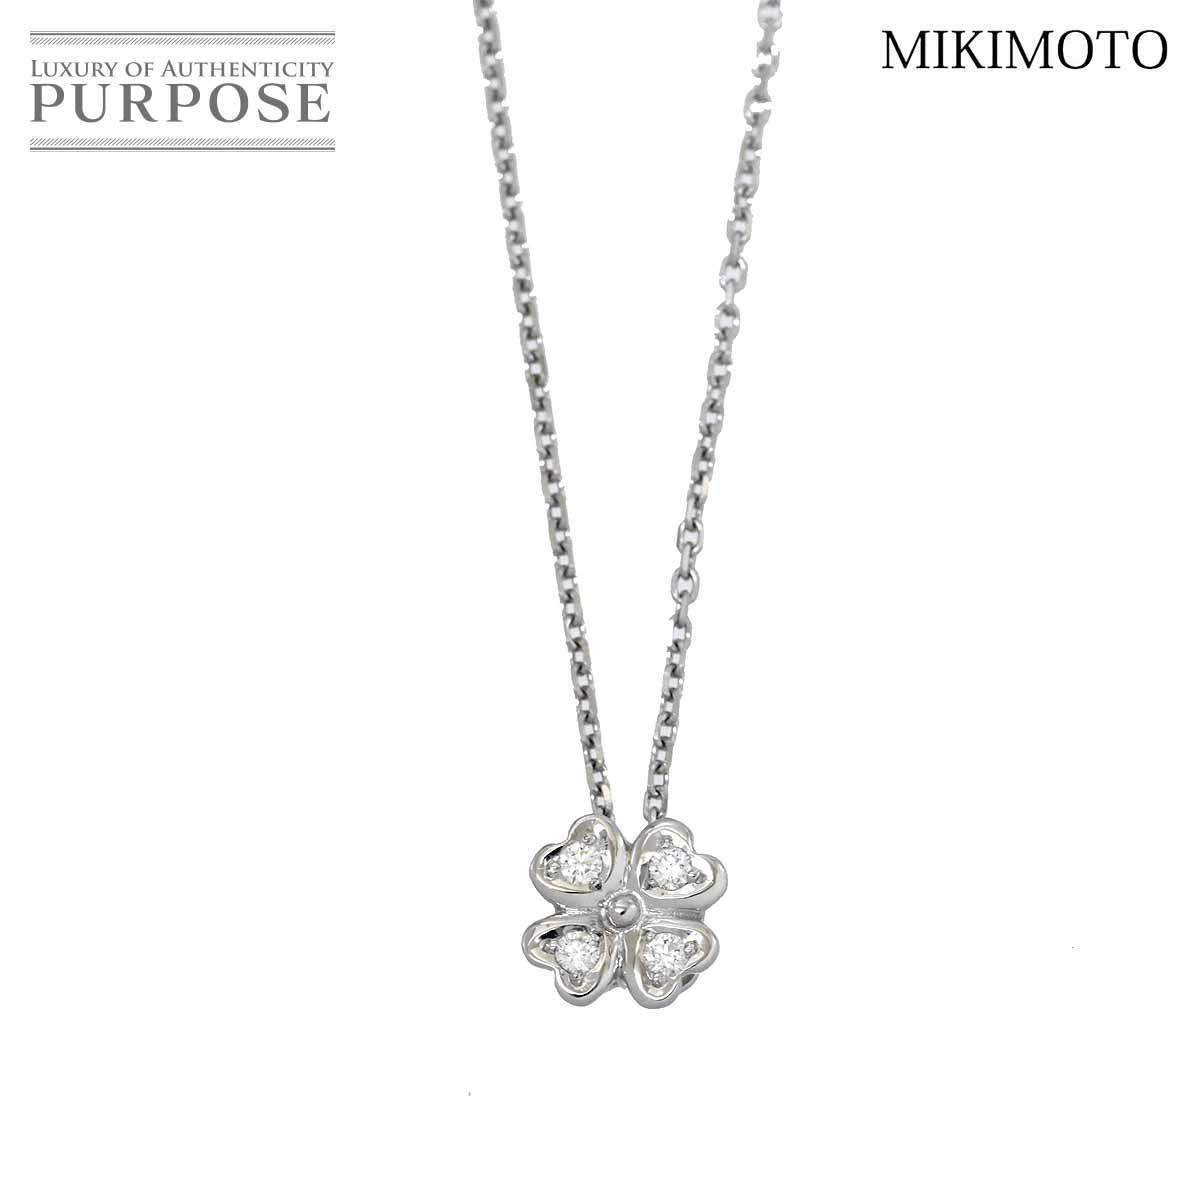 ミキモト MIKIMOTO ダイヤ 0.07ct ネックレス 41cm K18 WG ホワイトゴールド 750 クローバー Diamond Necklace 90155988